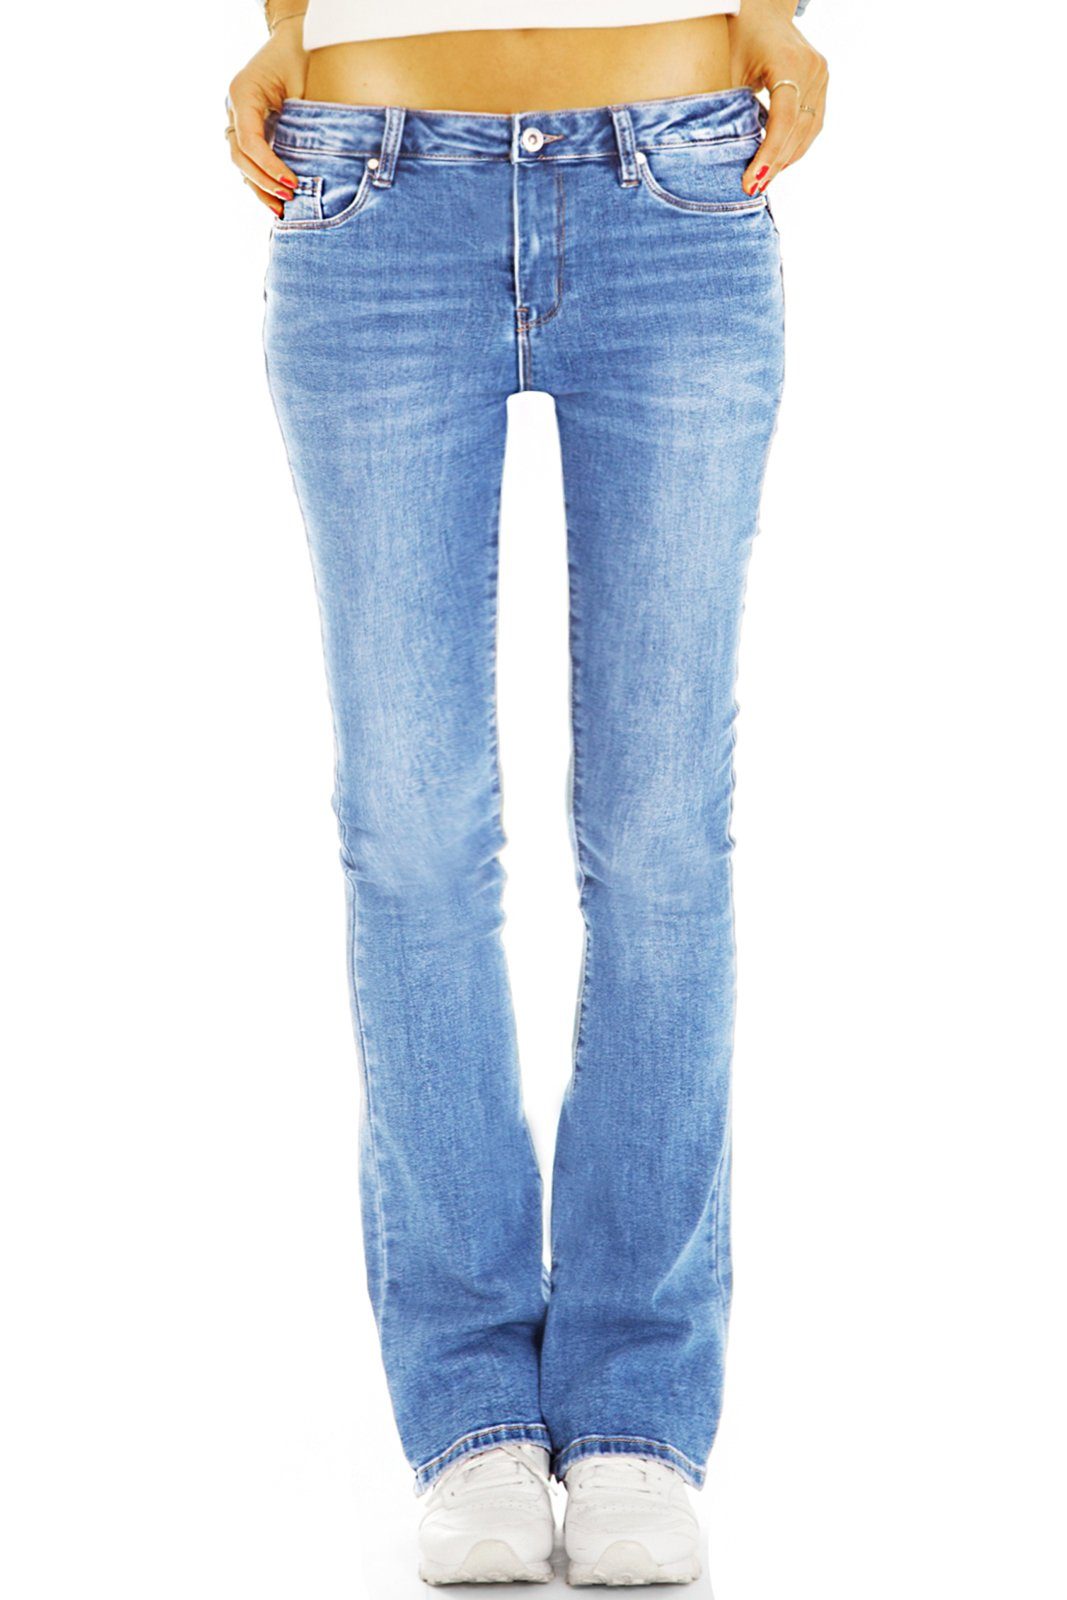 Denim j44p Hosen Jeans - hellblau be - mit Waist Stretch Bootcut-Jeans styled Medium Damen bequeme 5-Pocket-Style Stretch-Anteil, Bootcut